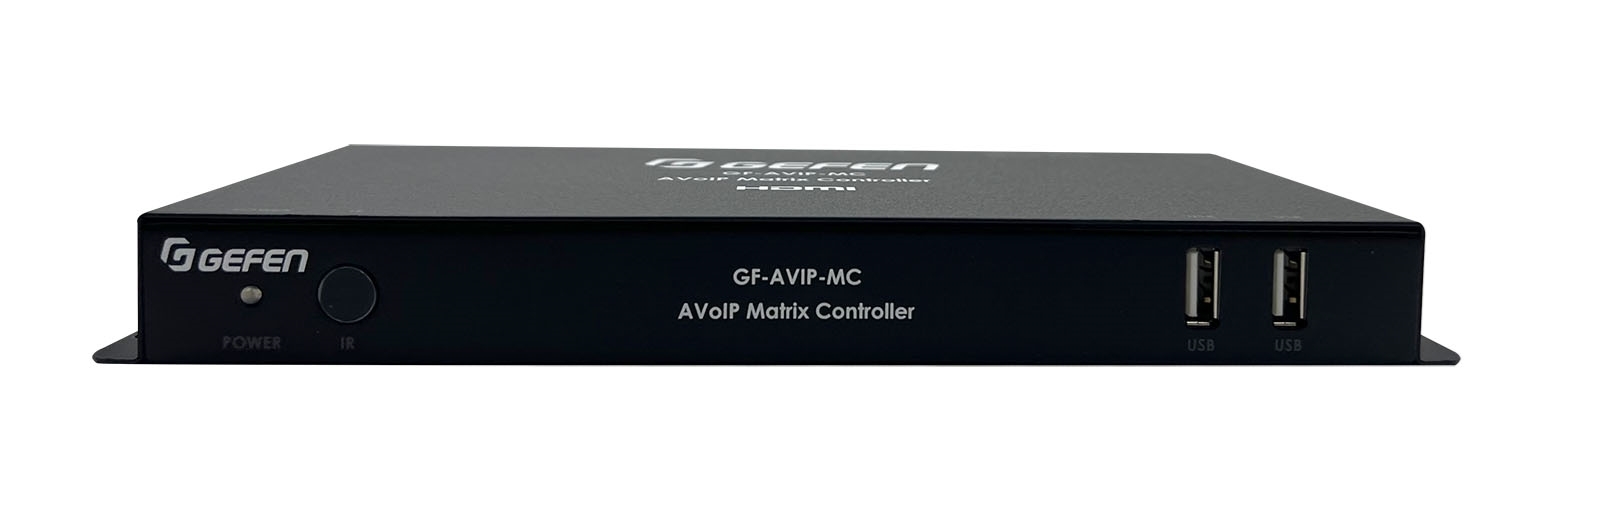 Gefen GF-AVIP-MC - Контроллер для управления IP-передатчиками/приемниками Gefen с поддержкой «виртуальной матрицы»